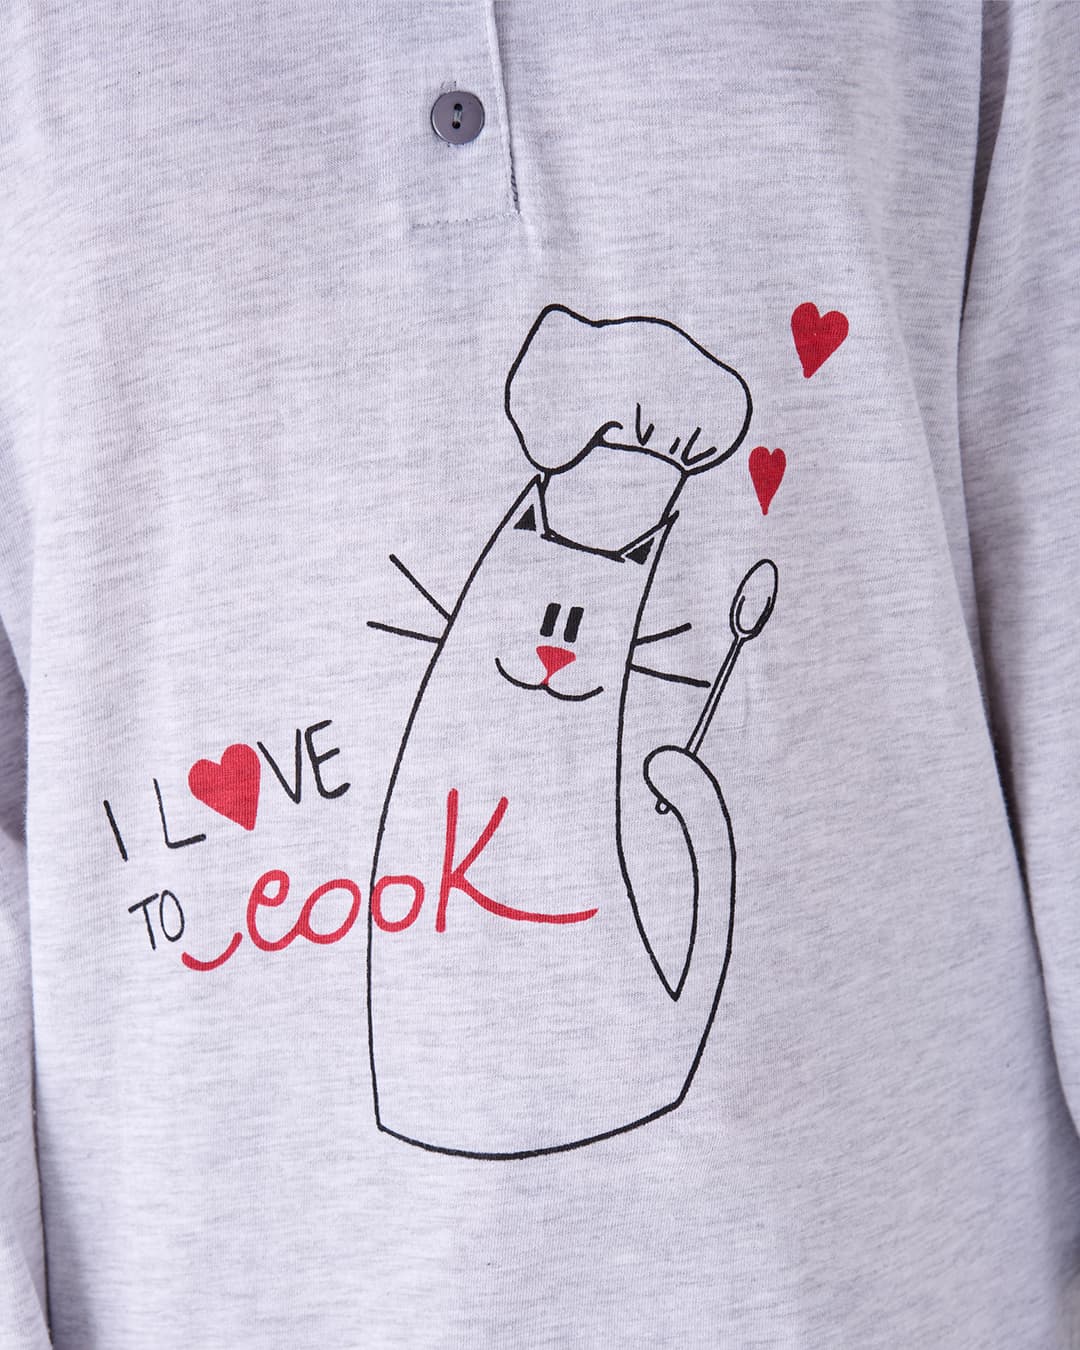 Dettaglio disegno sulla maglia del pigiama lungo da bimba "COOK"